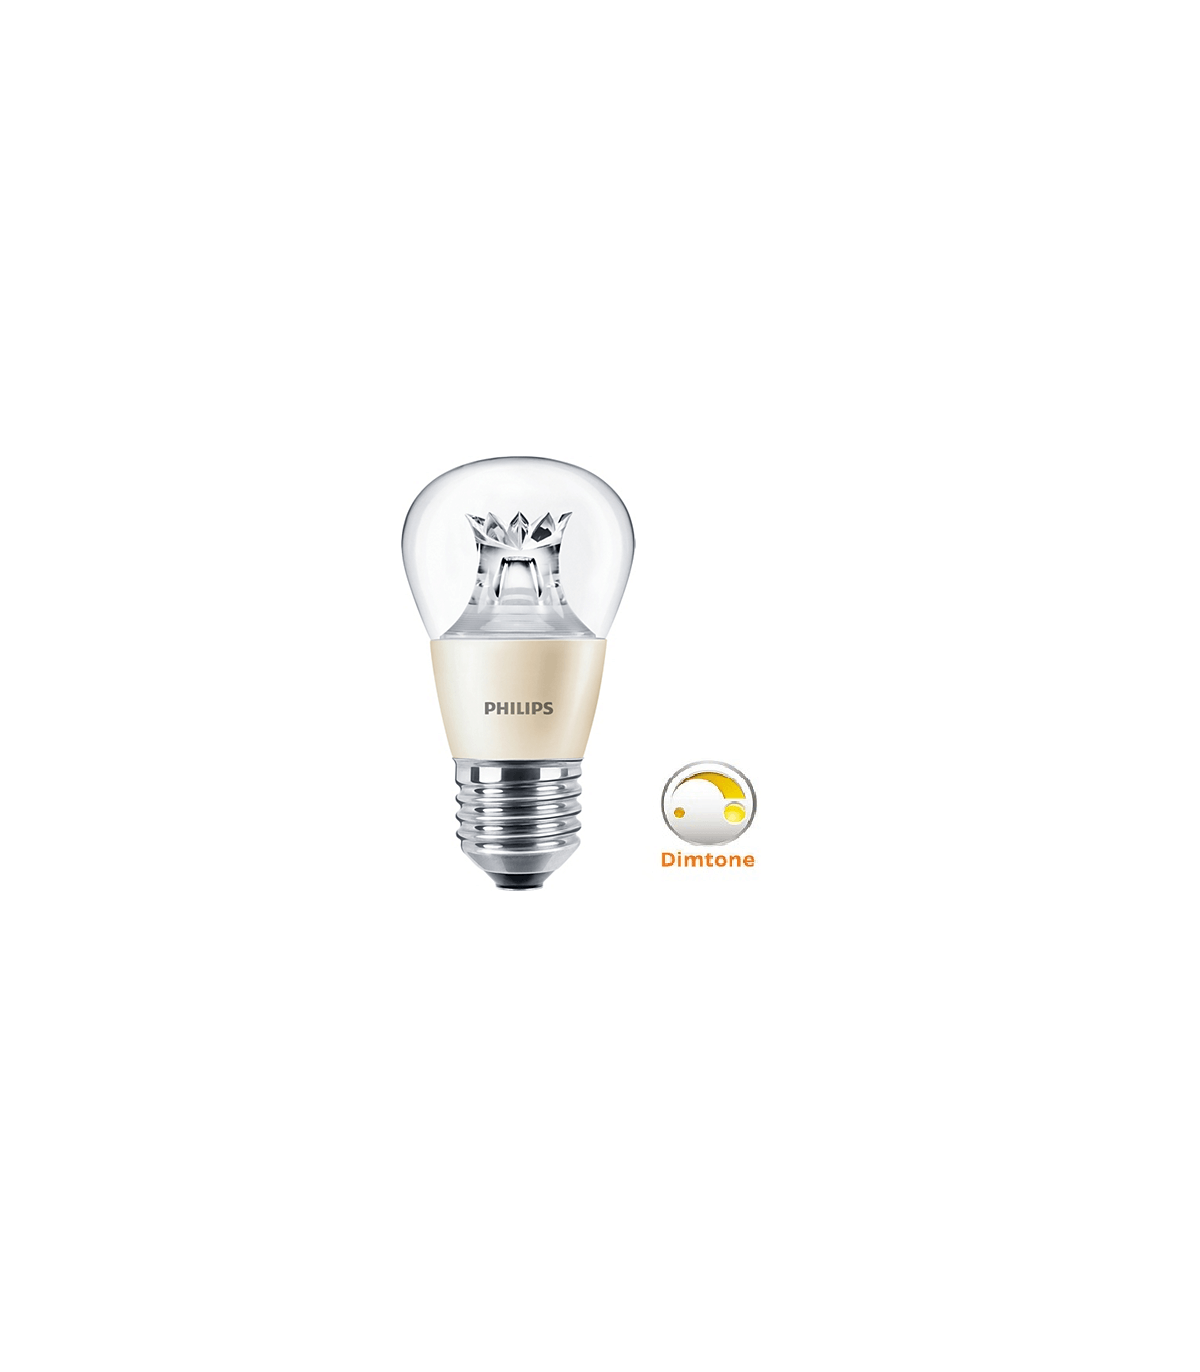 Ampoule LED SYLVANIA capsule 2W substitut 25W 250lumens Blanc